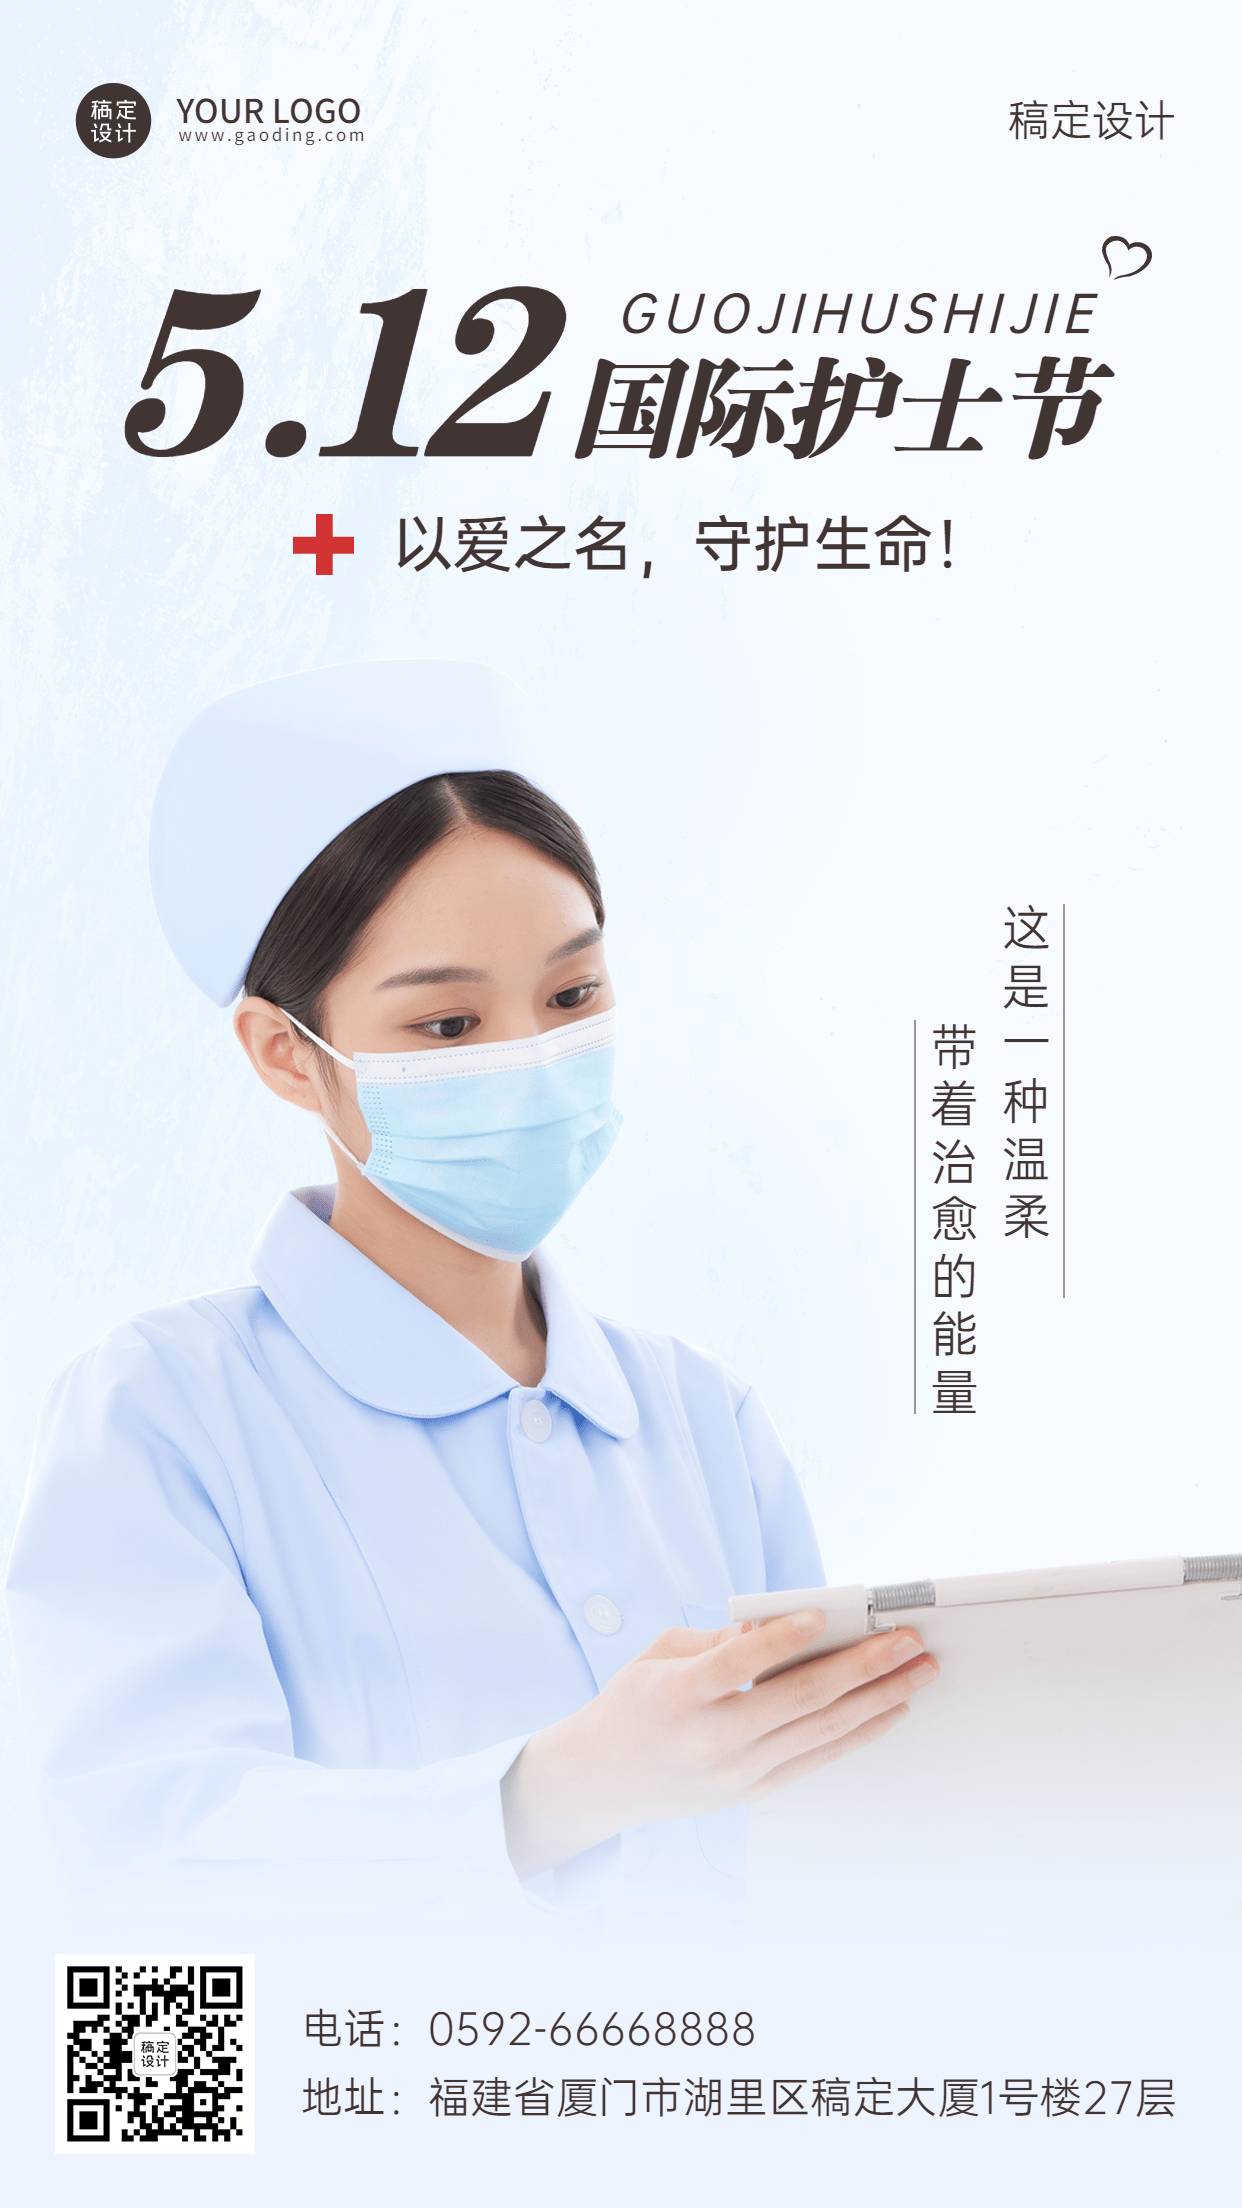 国际护士节节日宣传手机海报